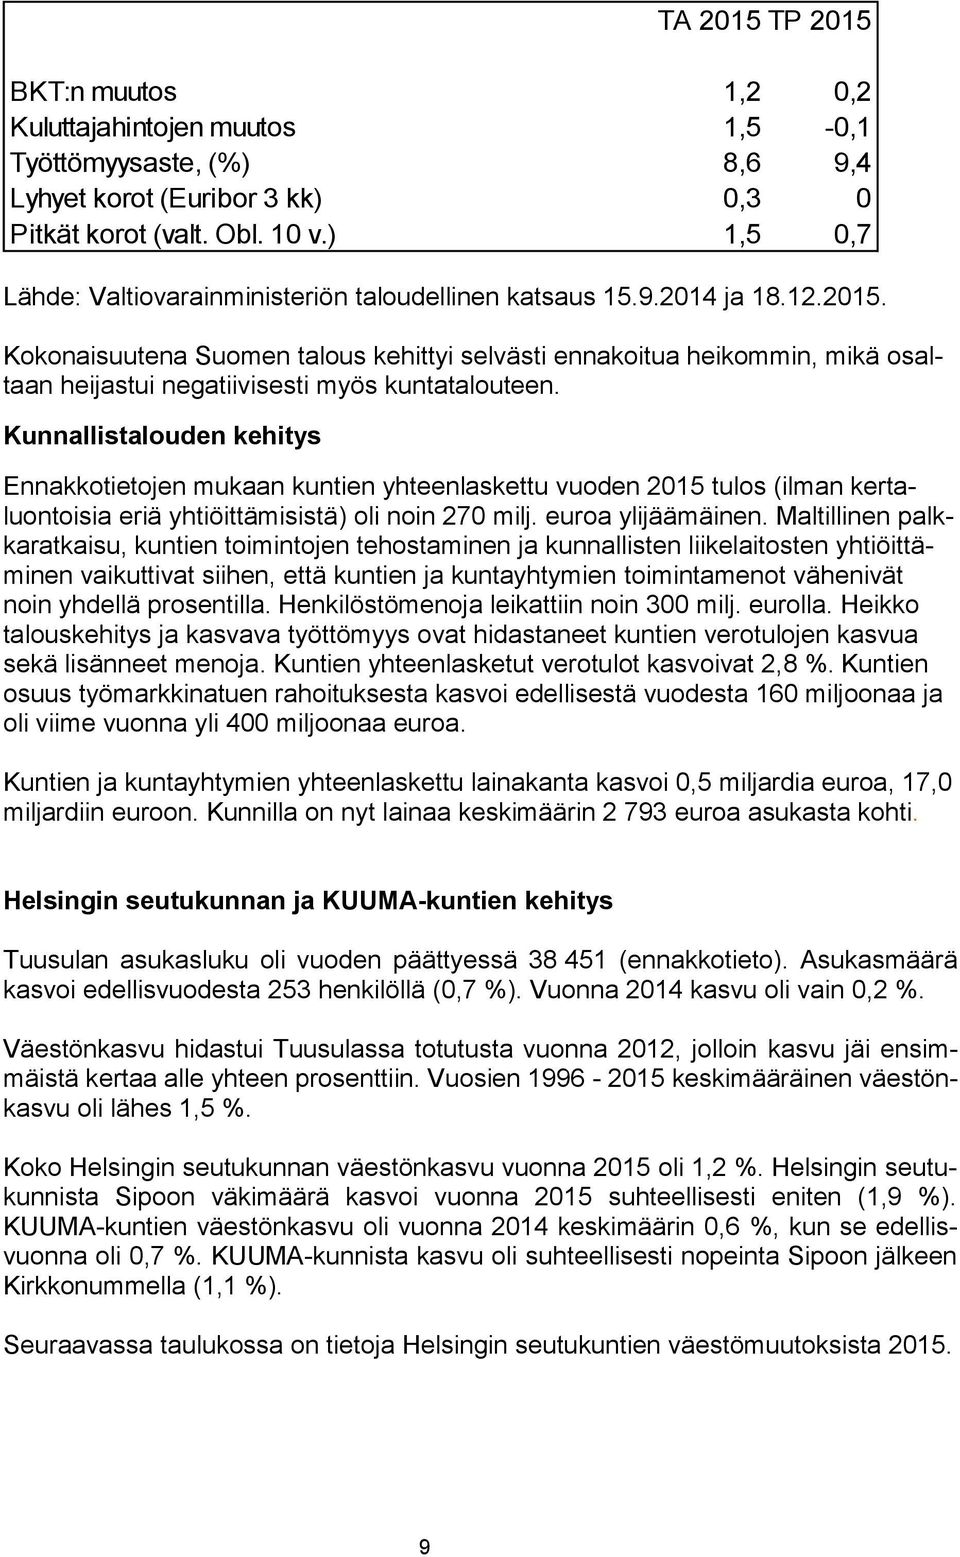 Kokonaisuutena Suomen talous kehittyi selvästi ennakoitua heikommin, mikä osaltaan heijastui negatiivisesti myös kuntatalouteen.